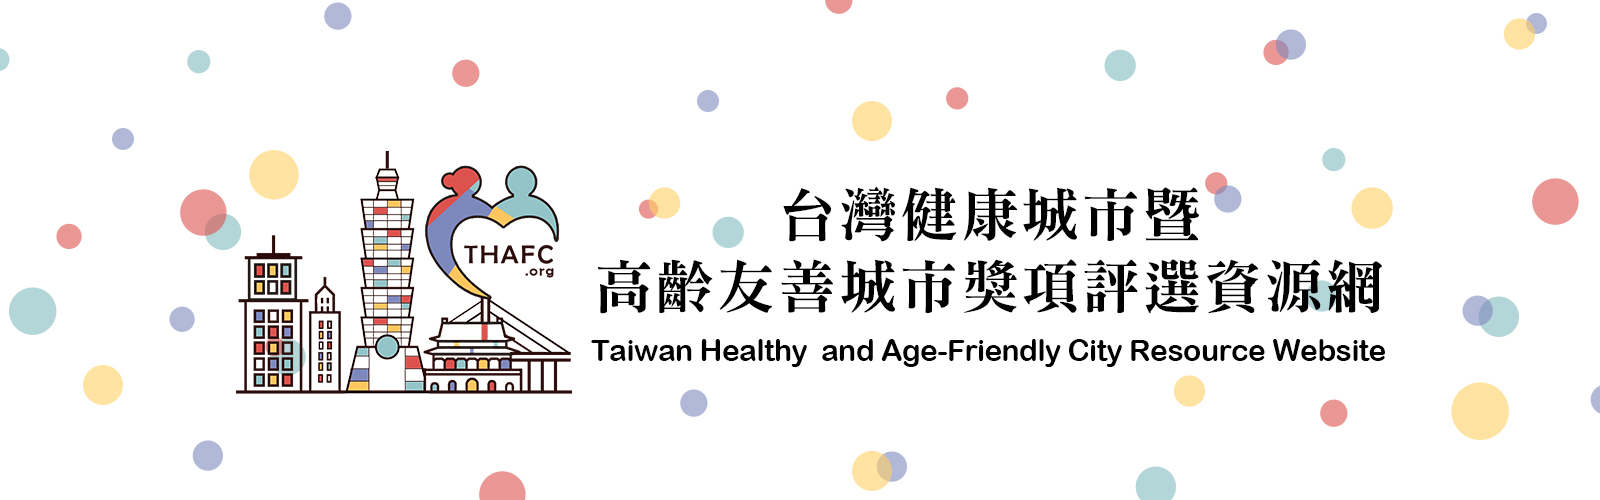 高齡友善城市的在地實踐案例——從「台灣健康城市暨高齡友善城市獎」談起